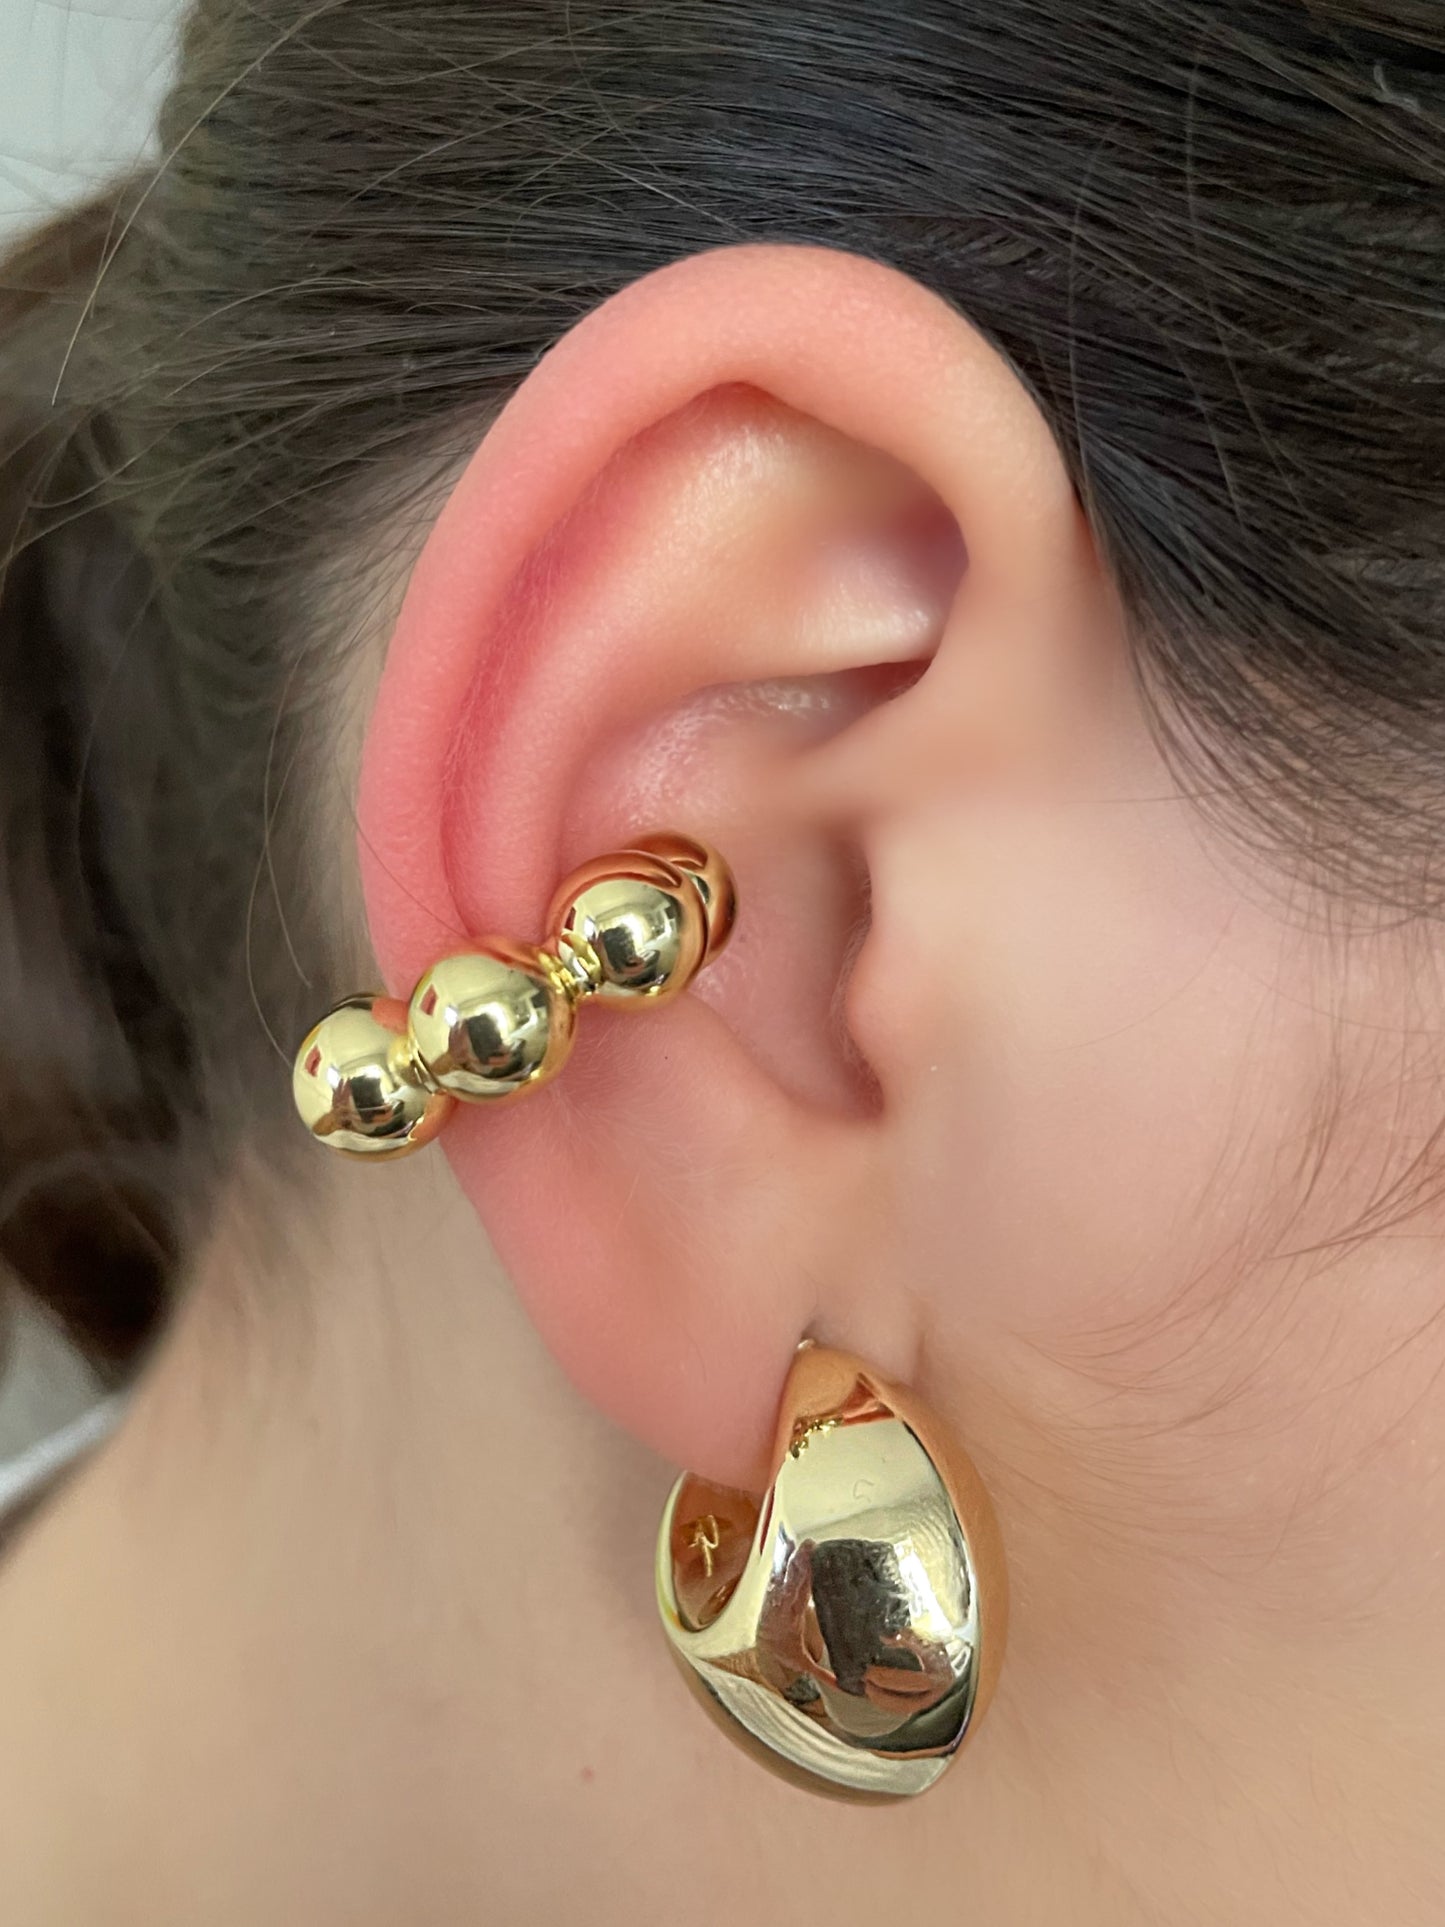 Le earcuff en perles